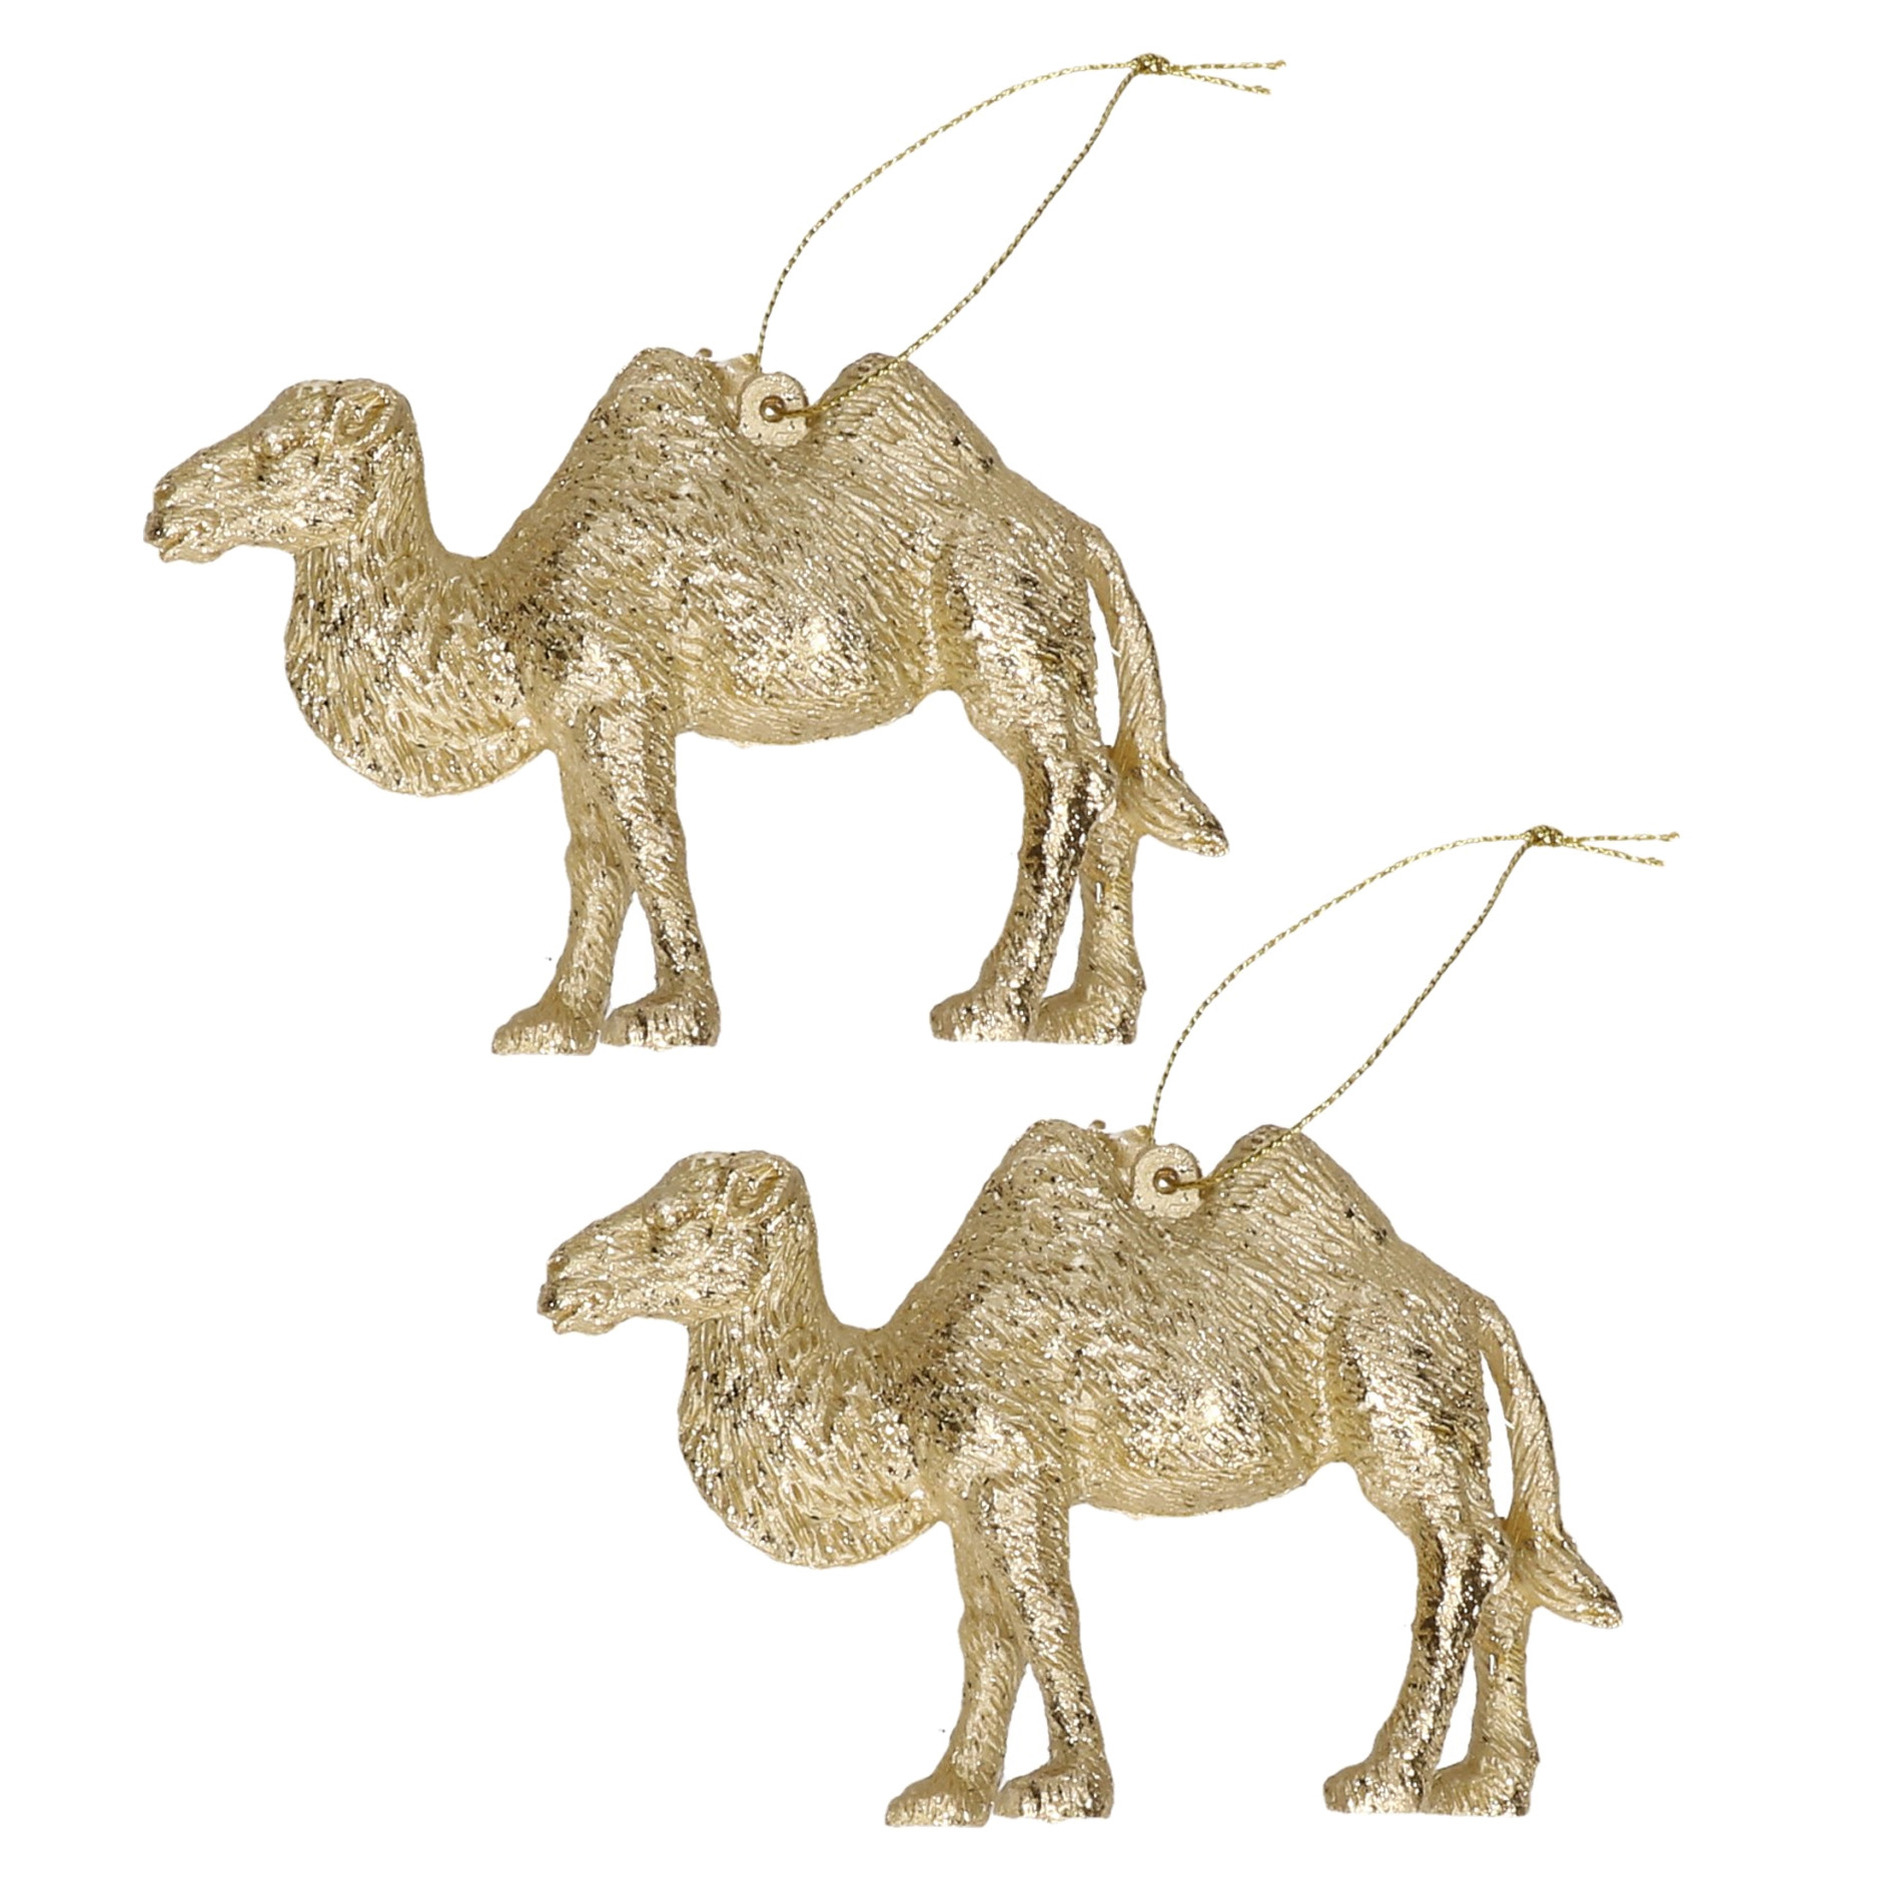 Afbeelding 2x Gouden kameel kerstornamenten kersthangers 12 cm door Animals Giftshop